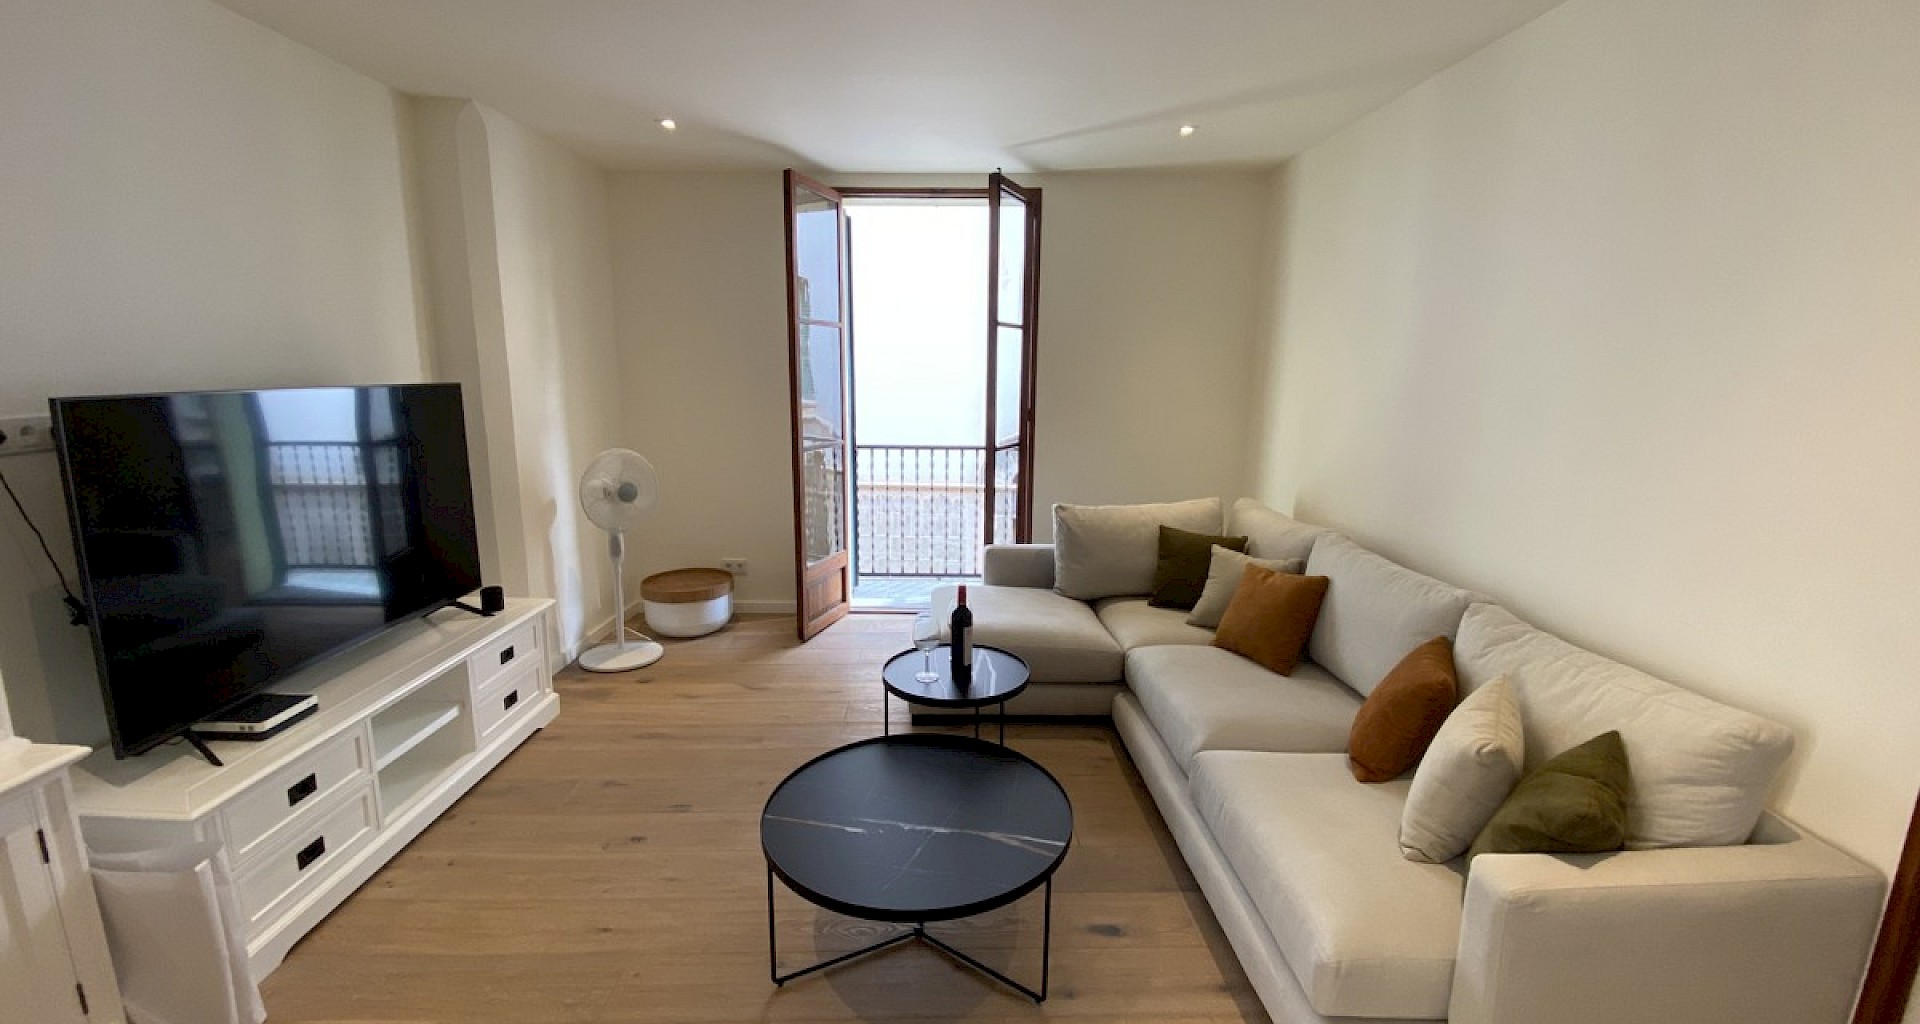 KROHN & LUEDEMANN Modern renovierte Wohnung in Palma in begehrter Altstadtlage kaufen 